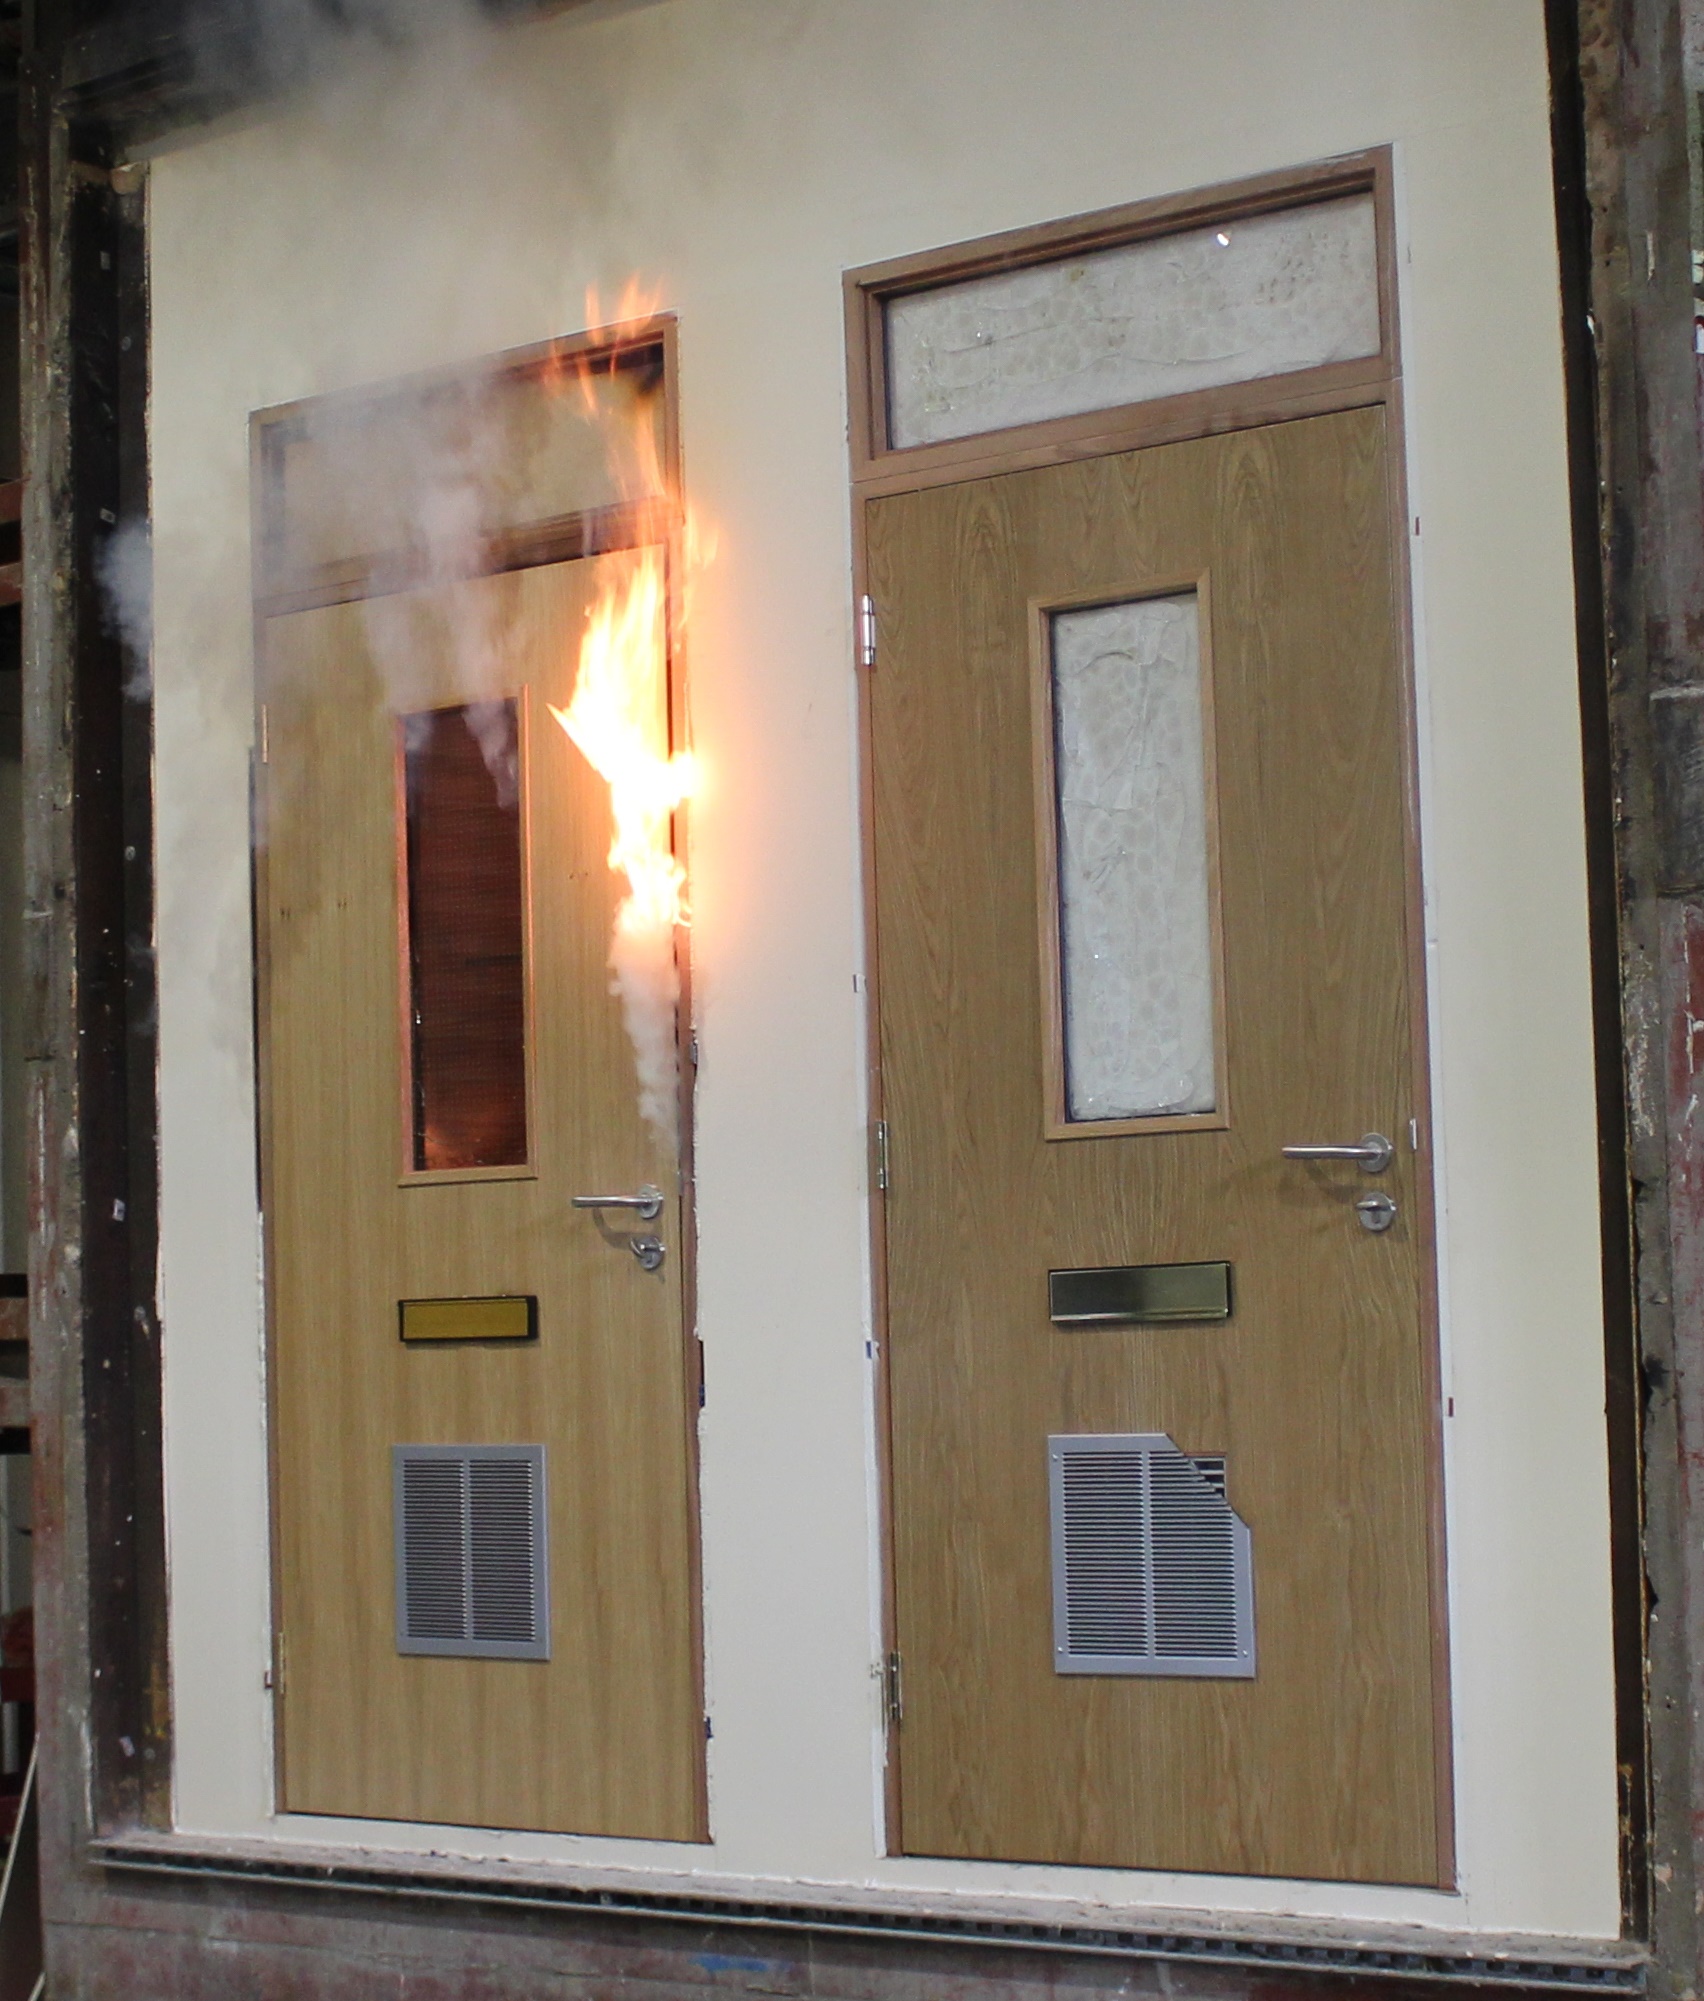 Fire door compliance – the essentials